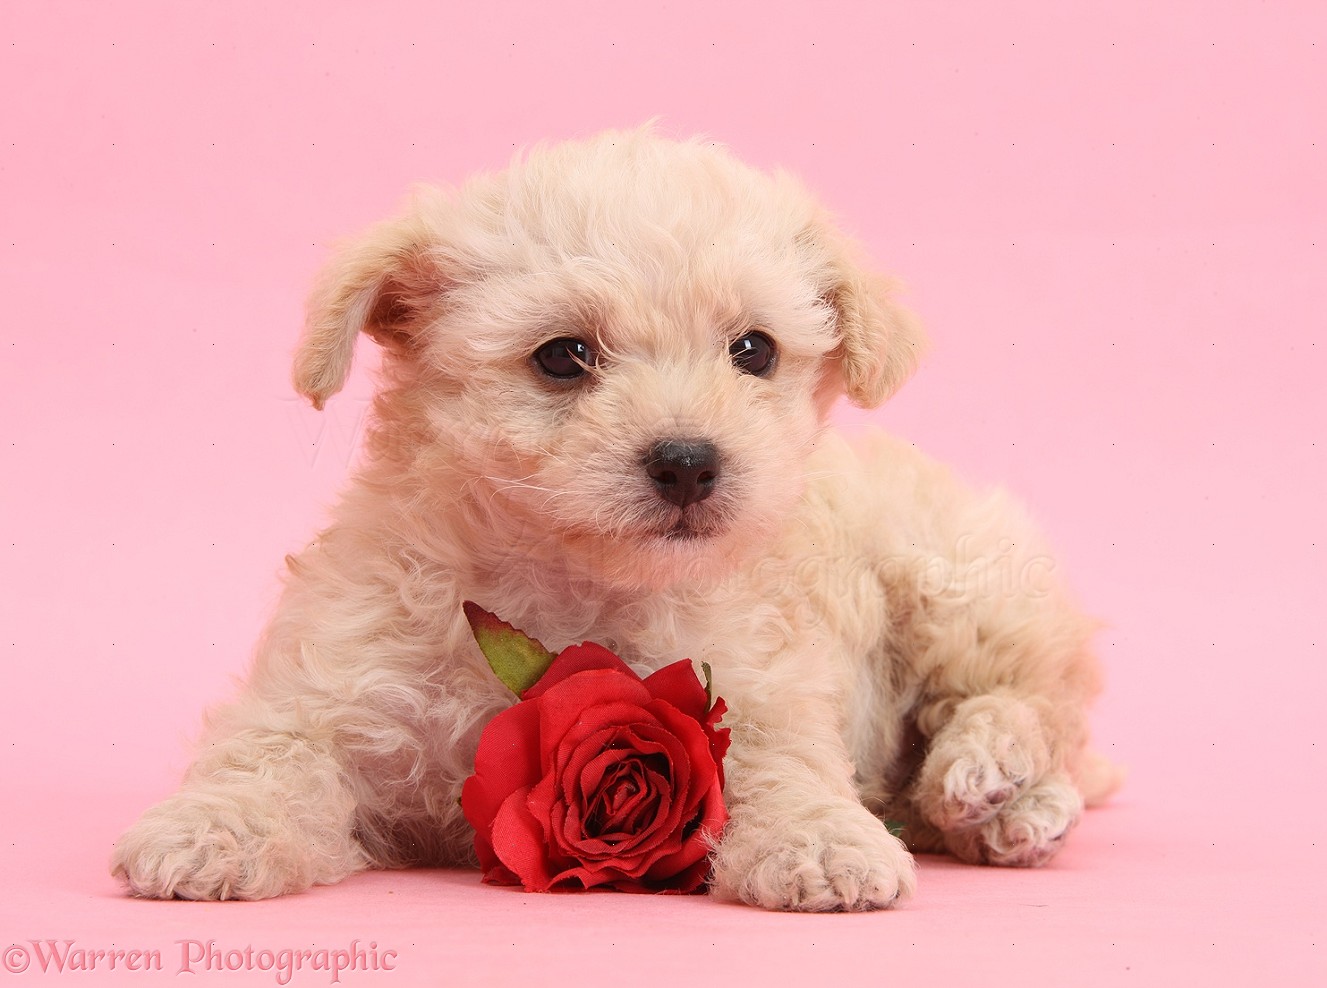 Ngọt ngào! Cùng đón chào Valentine với những hình ảnh chó con đáng yêu và đầy tình cảm nhé!